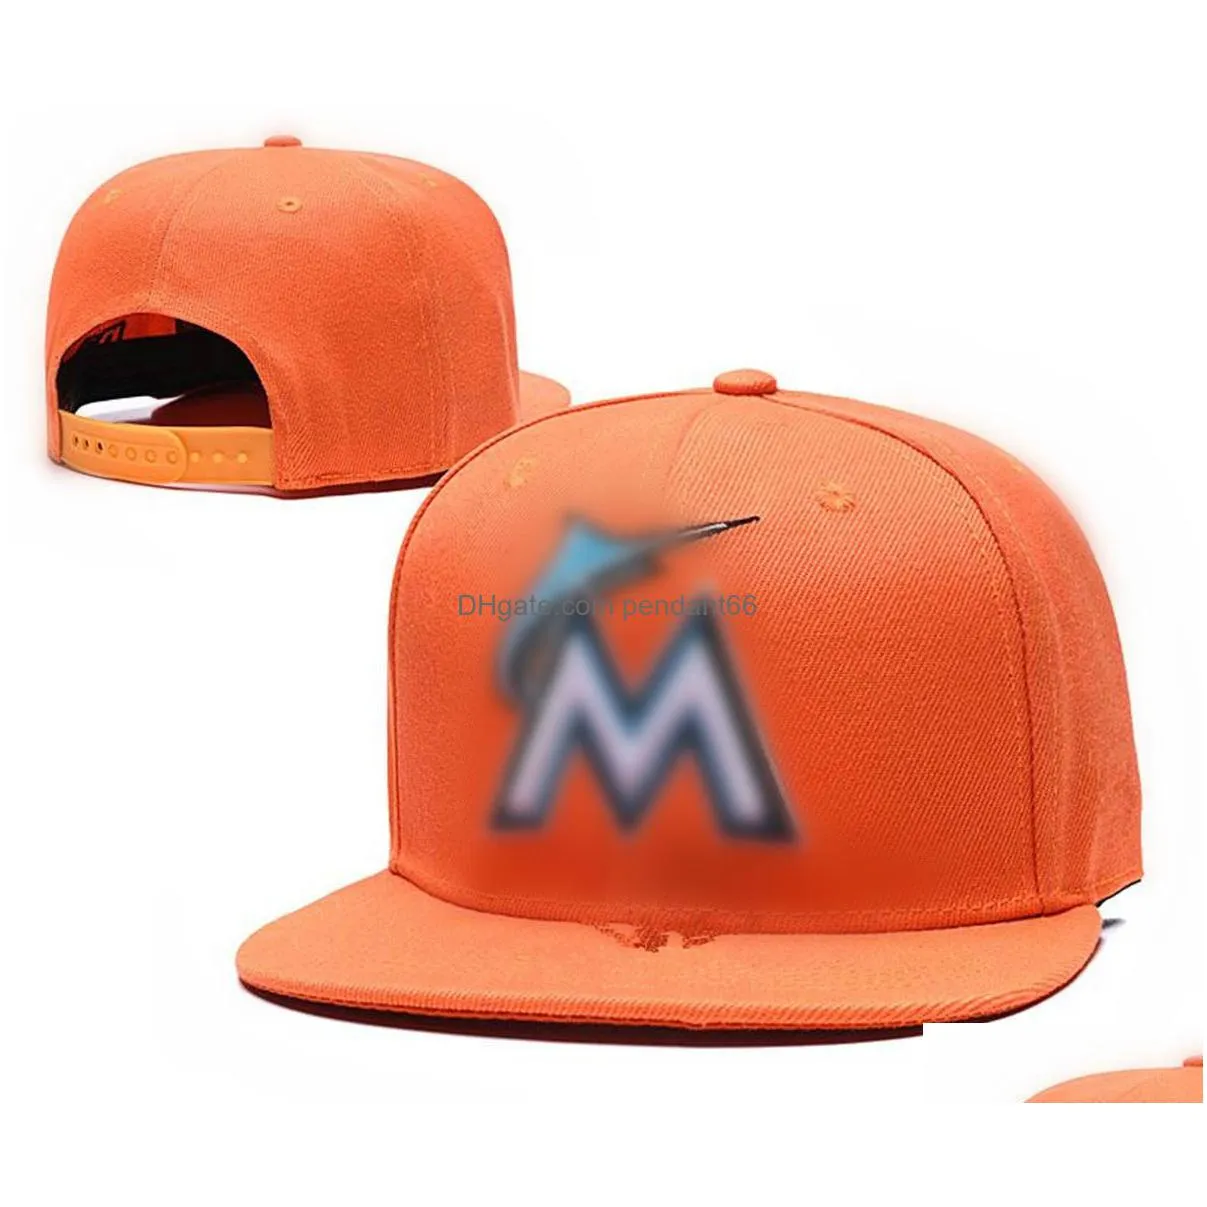 2023 fashion marlinss m letter baseball cap sport snapback hat for women men adjustable casquettes chapeus hiphop caps h6-4.15